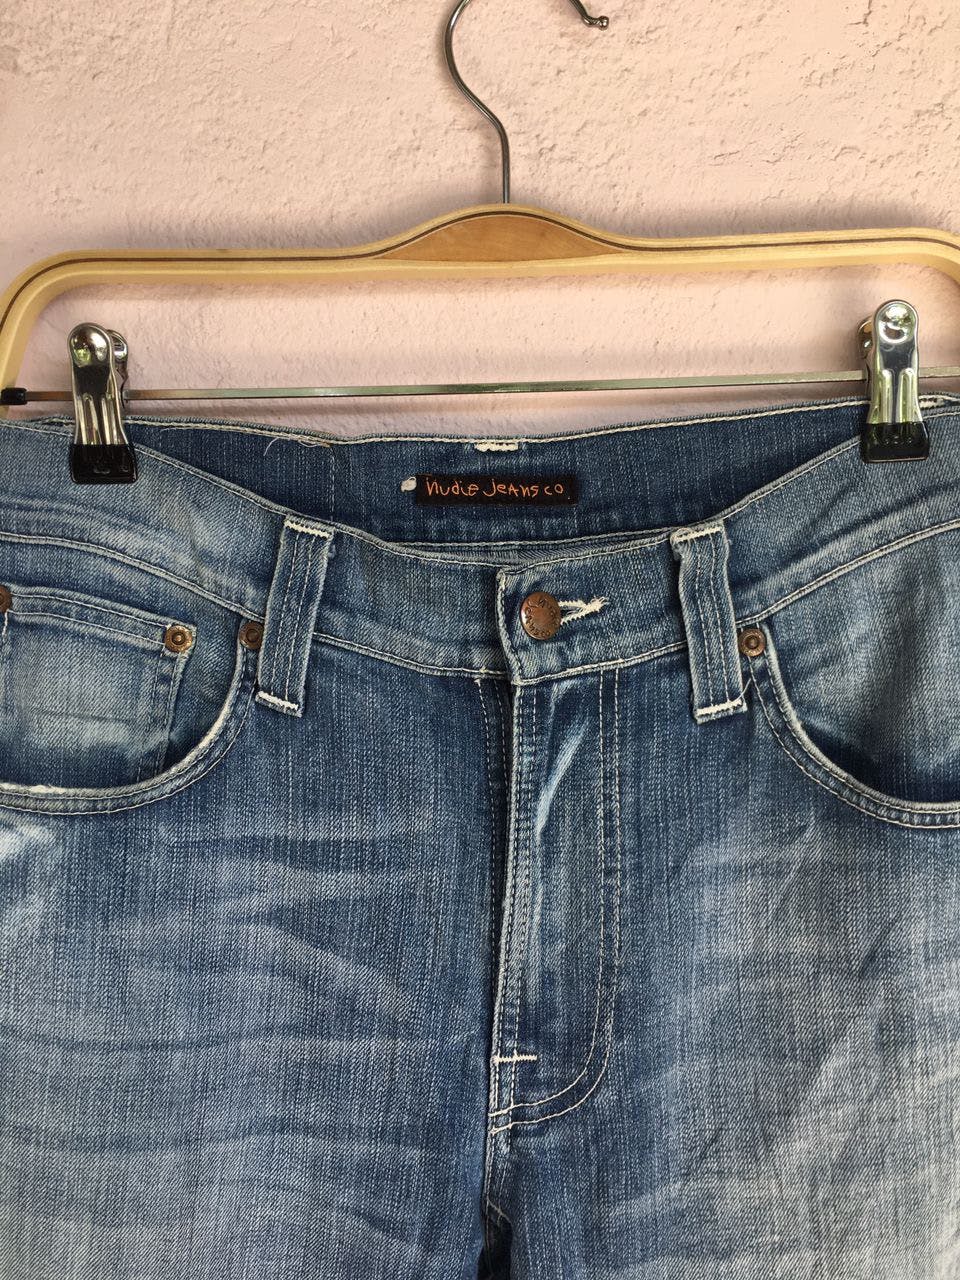 Nudie jeans.co Denim Slim jeans Men’s Pants made in Italy - 8